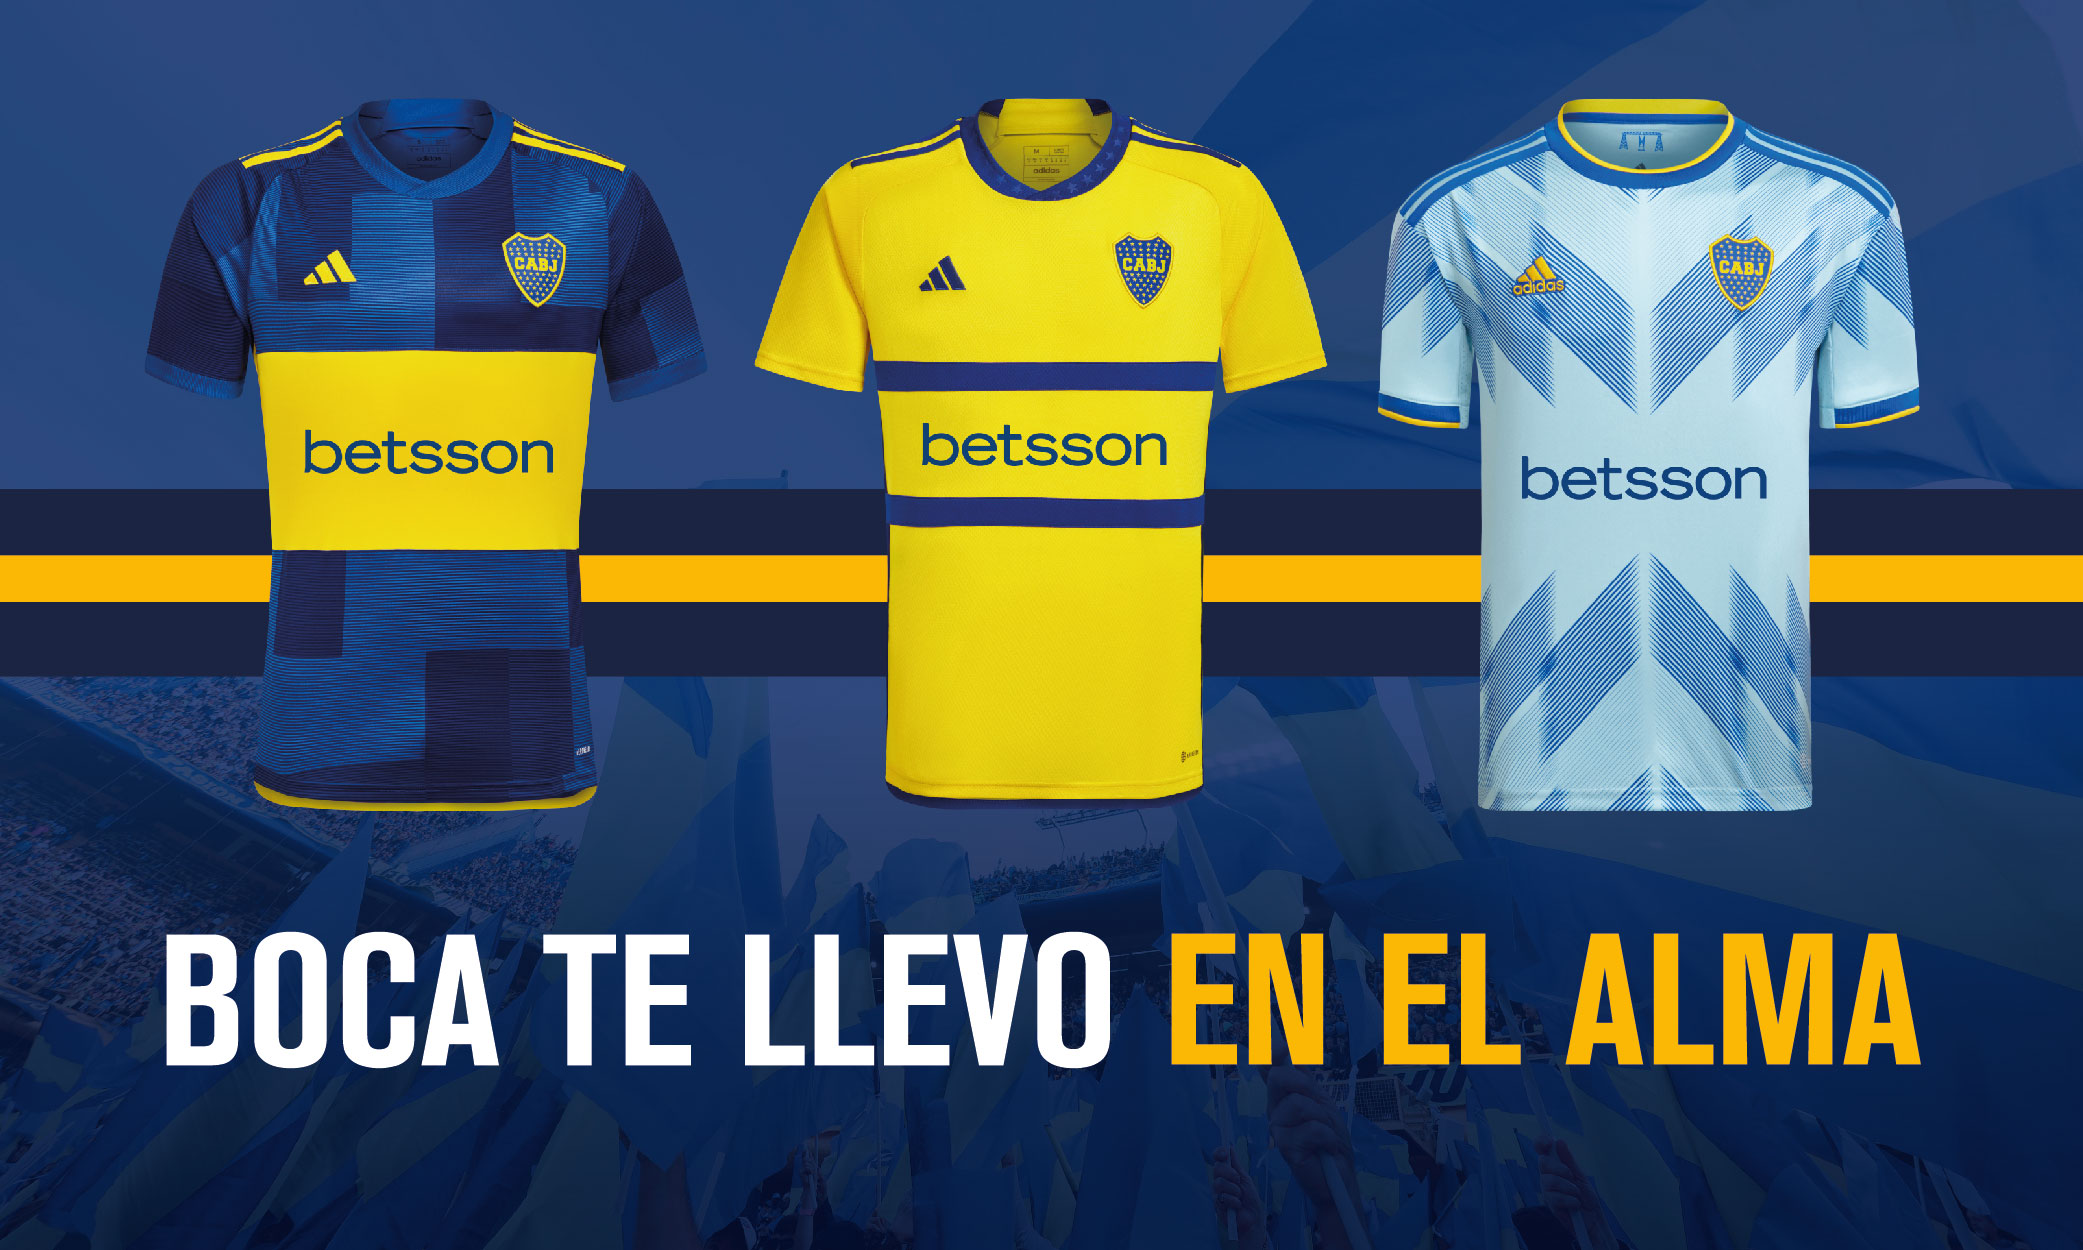 adidas Camiseta Titular Boca Juniors 23/24 - Azul